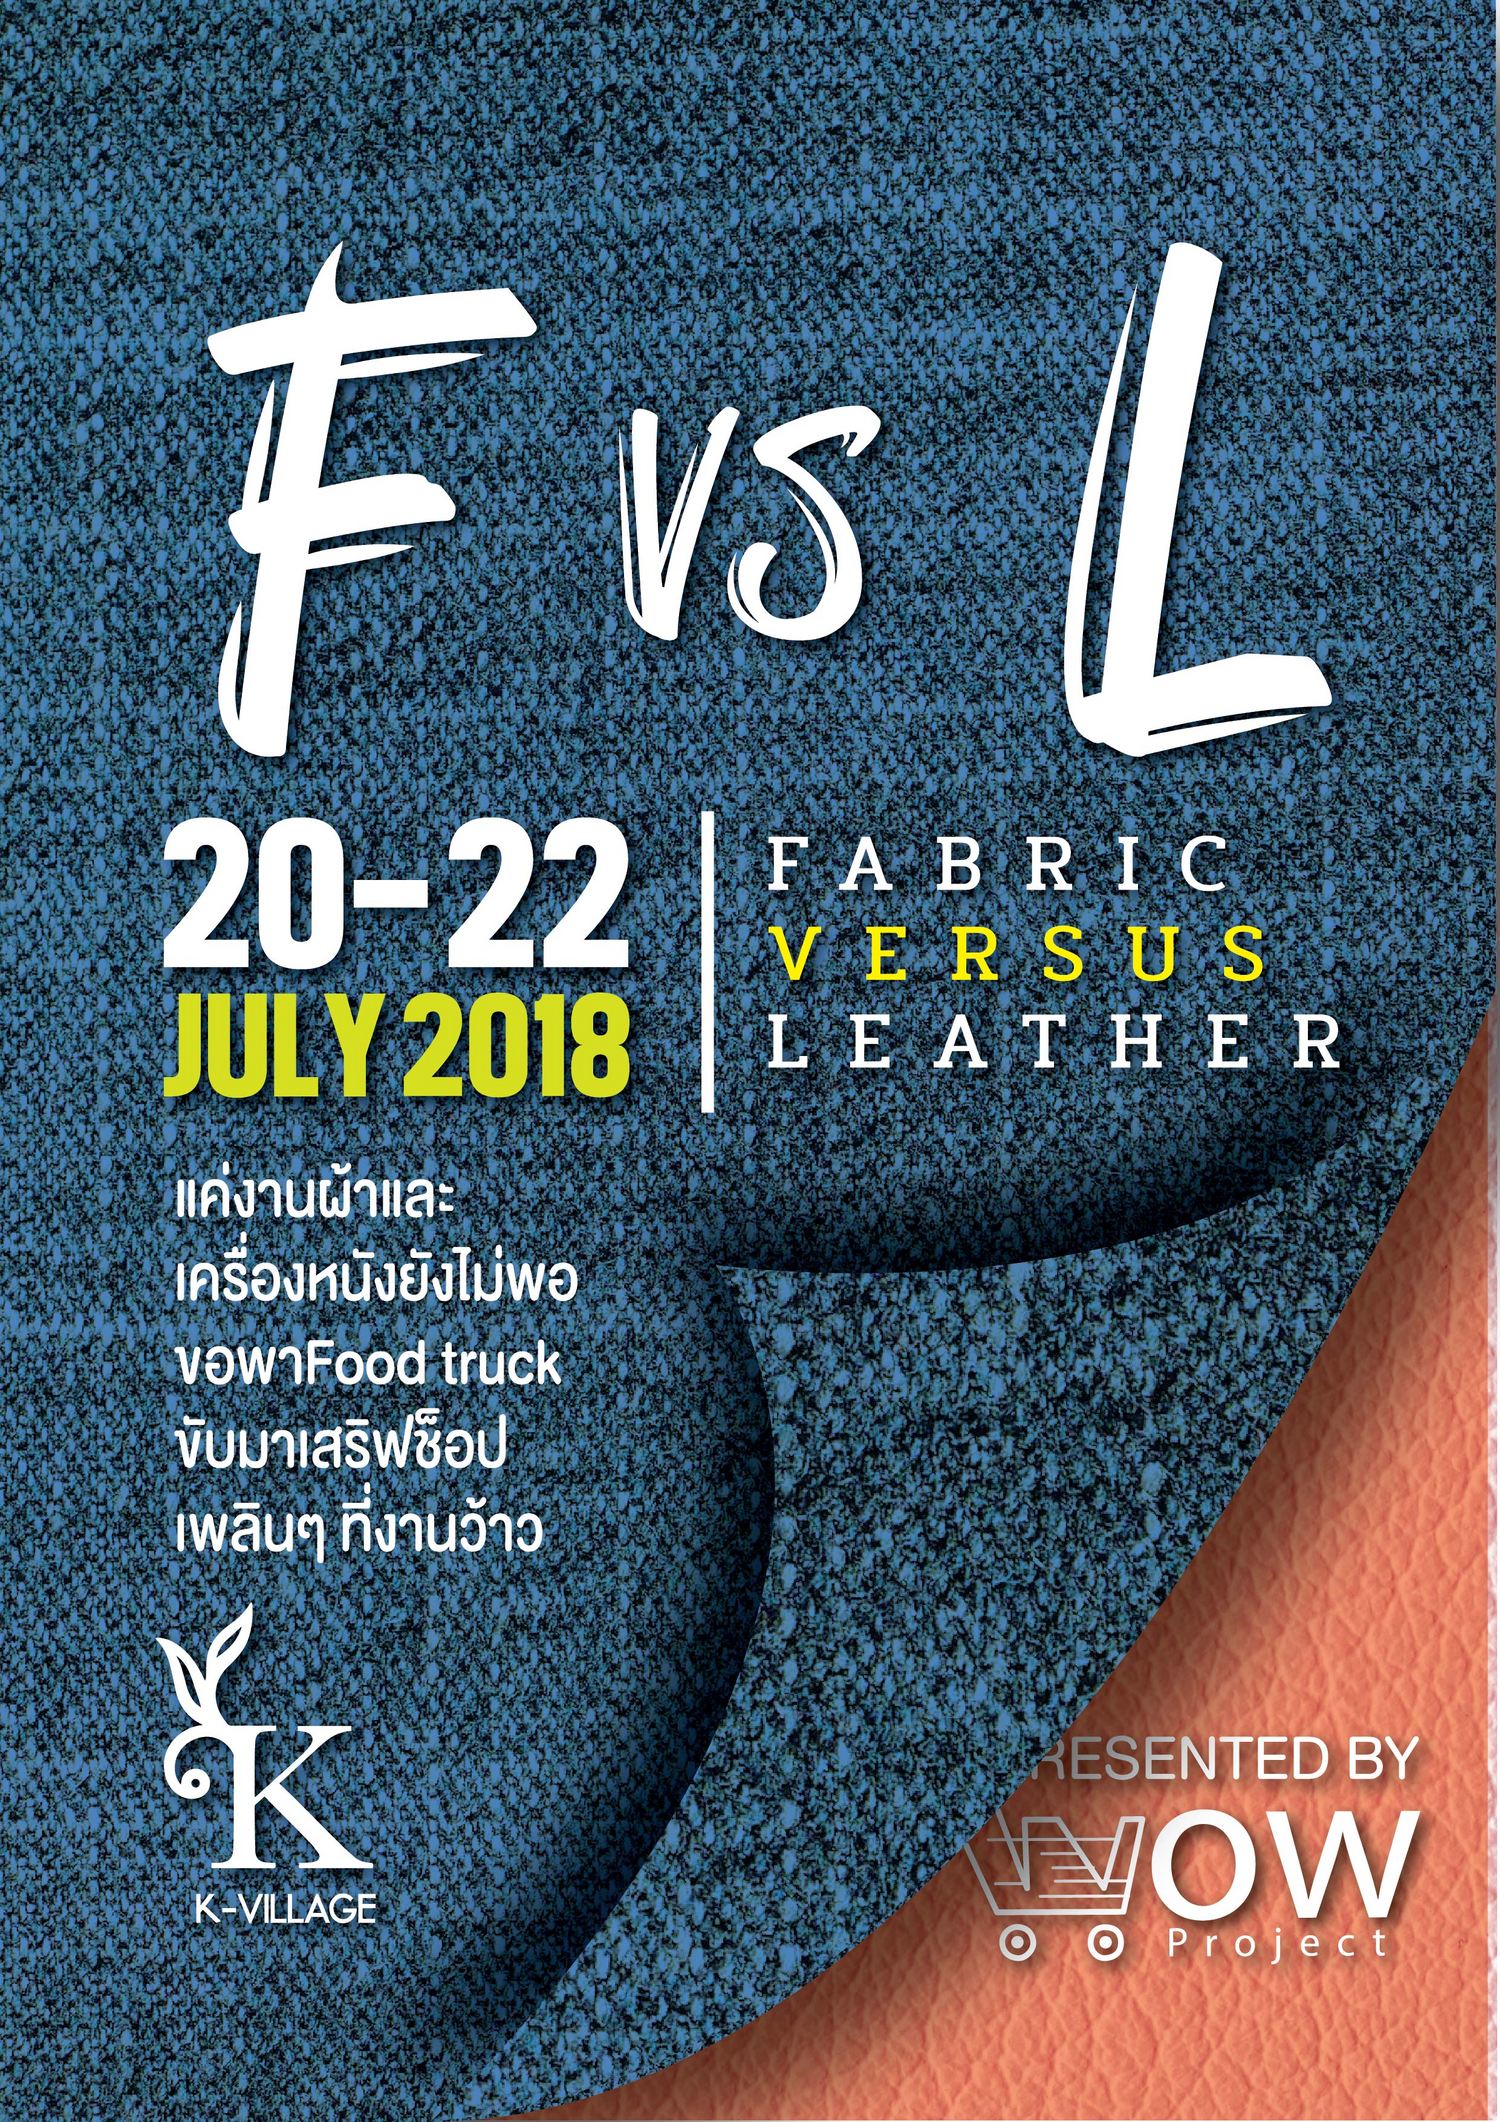 Fabric Versus Leather ( F vs L)